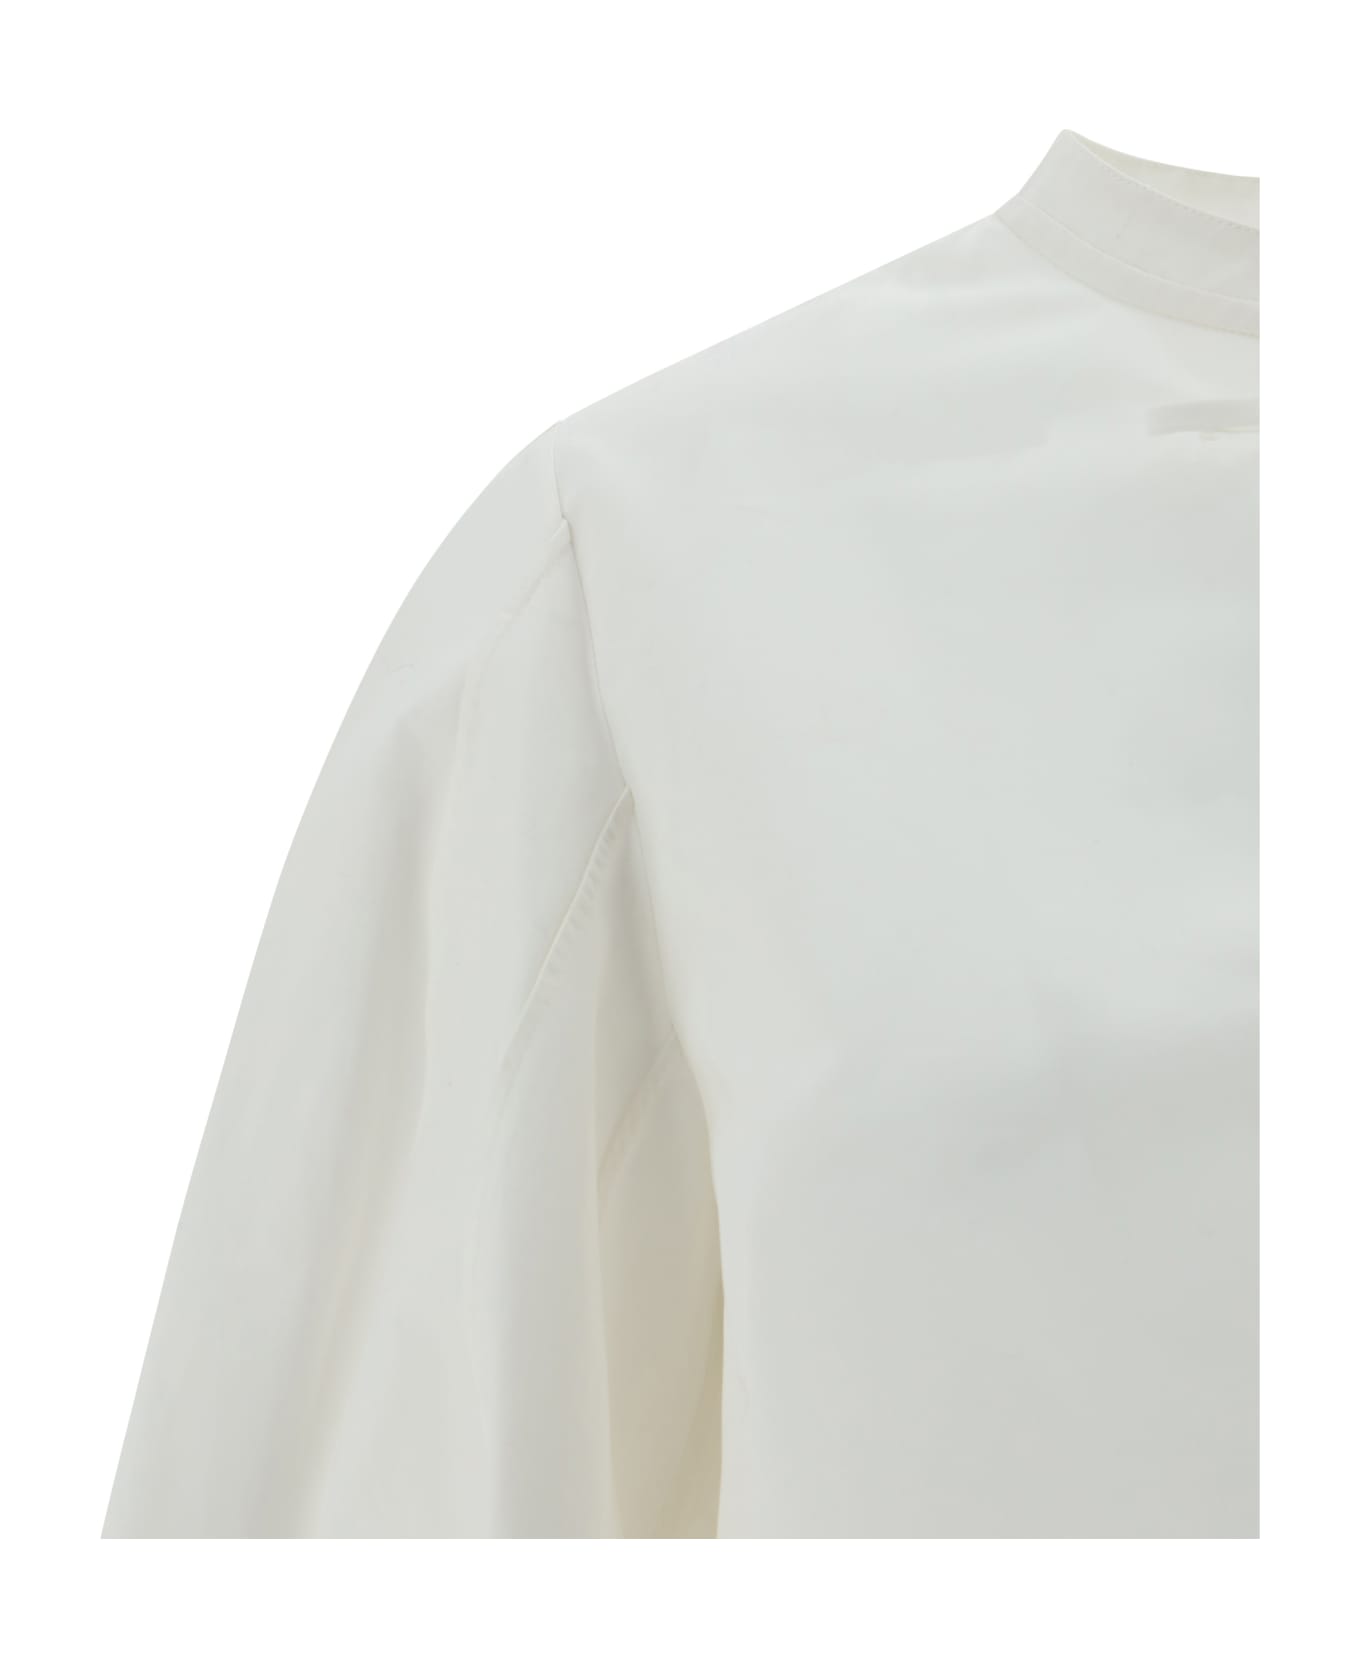 Chloé Blusa Shirt - White ブラウス